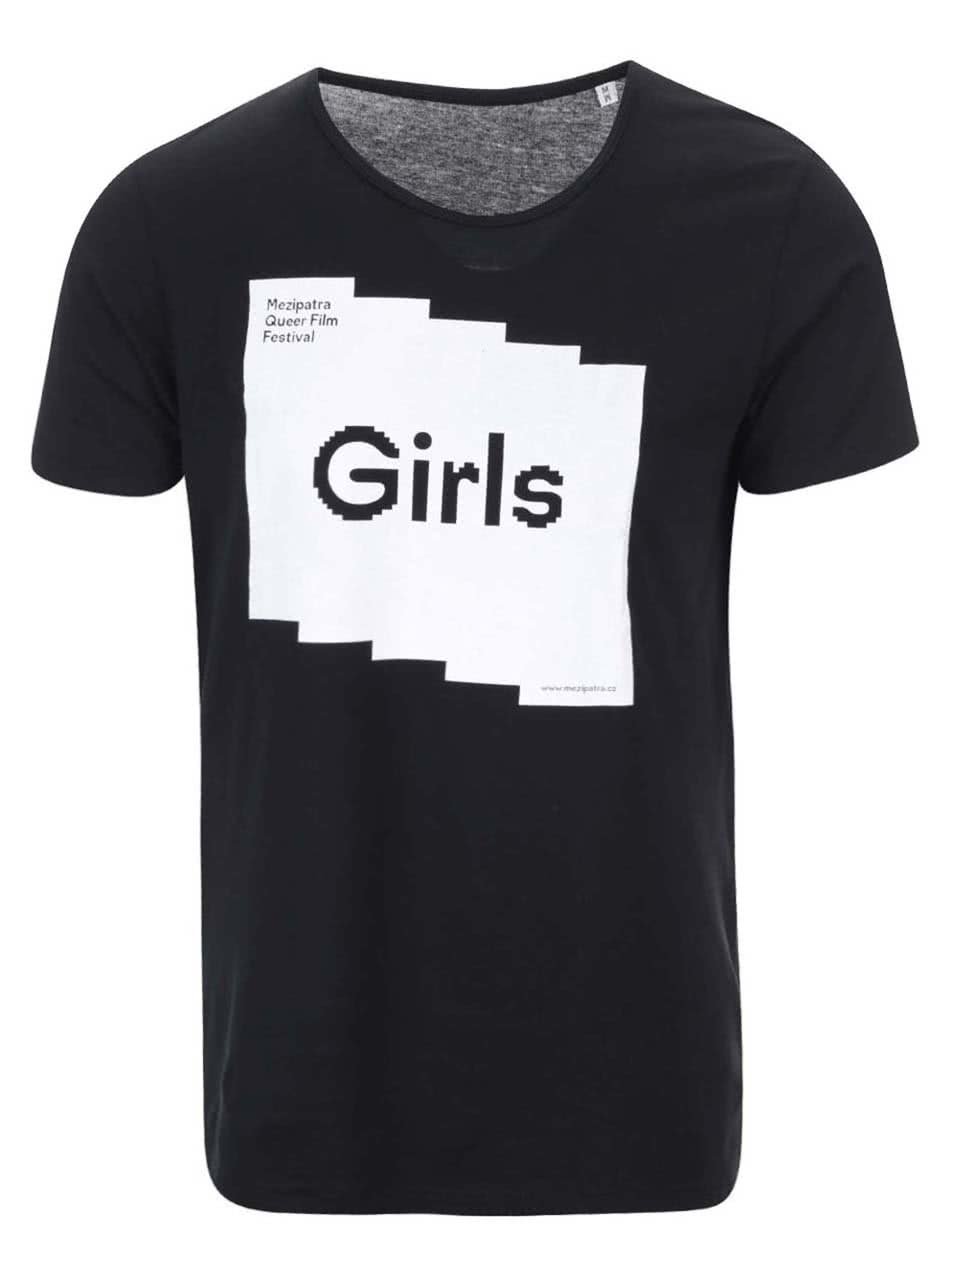 "Dobré" černé unisex triko pro Mezipatra Girls